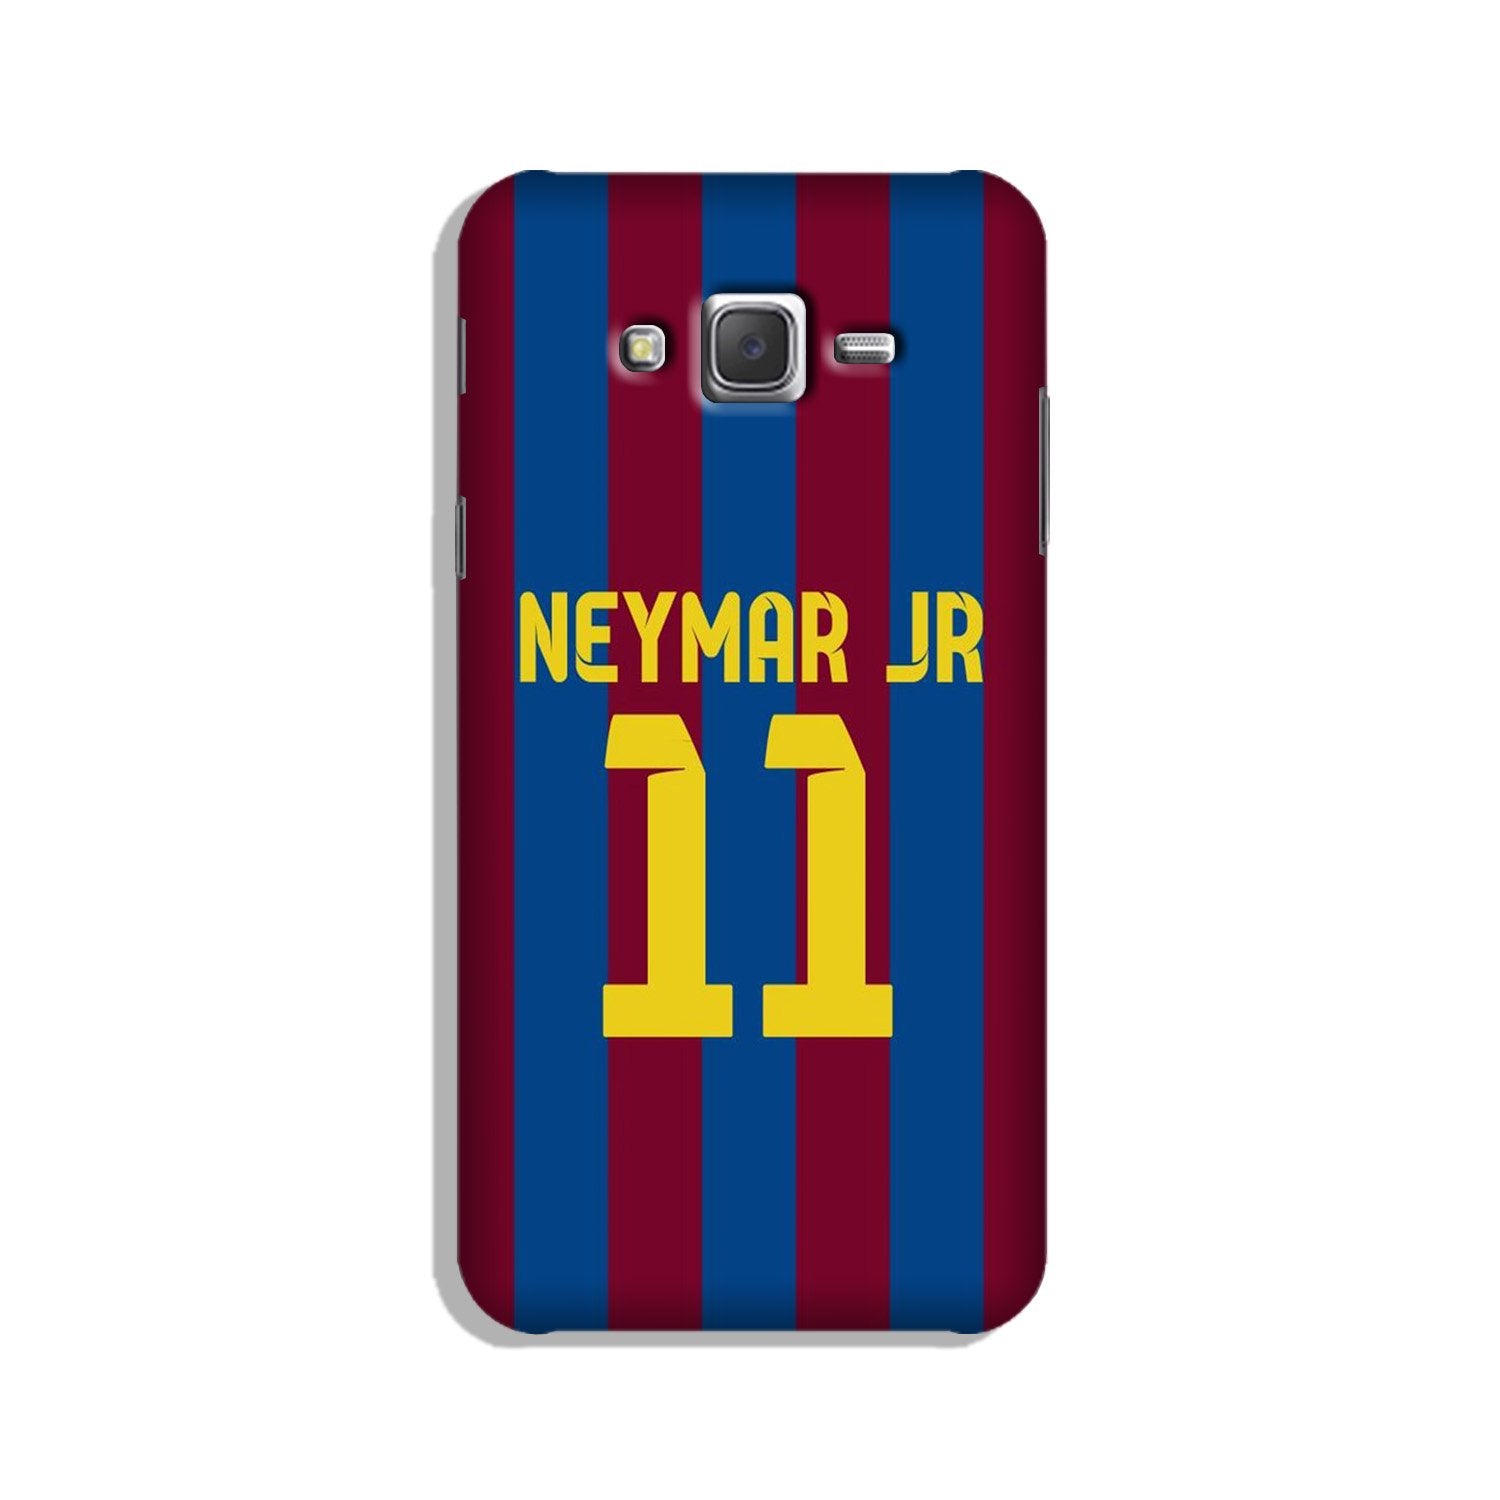 Neymar Jr Case for Galaxy J2 (2015)  (Design - 162)